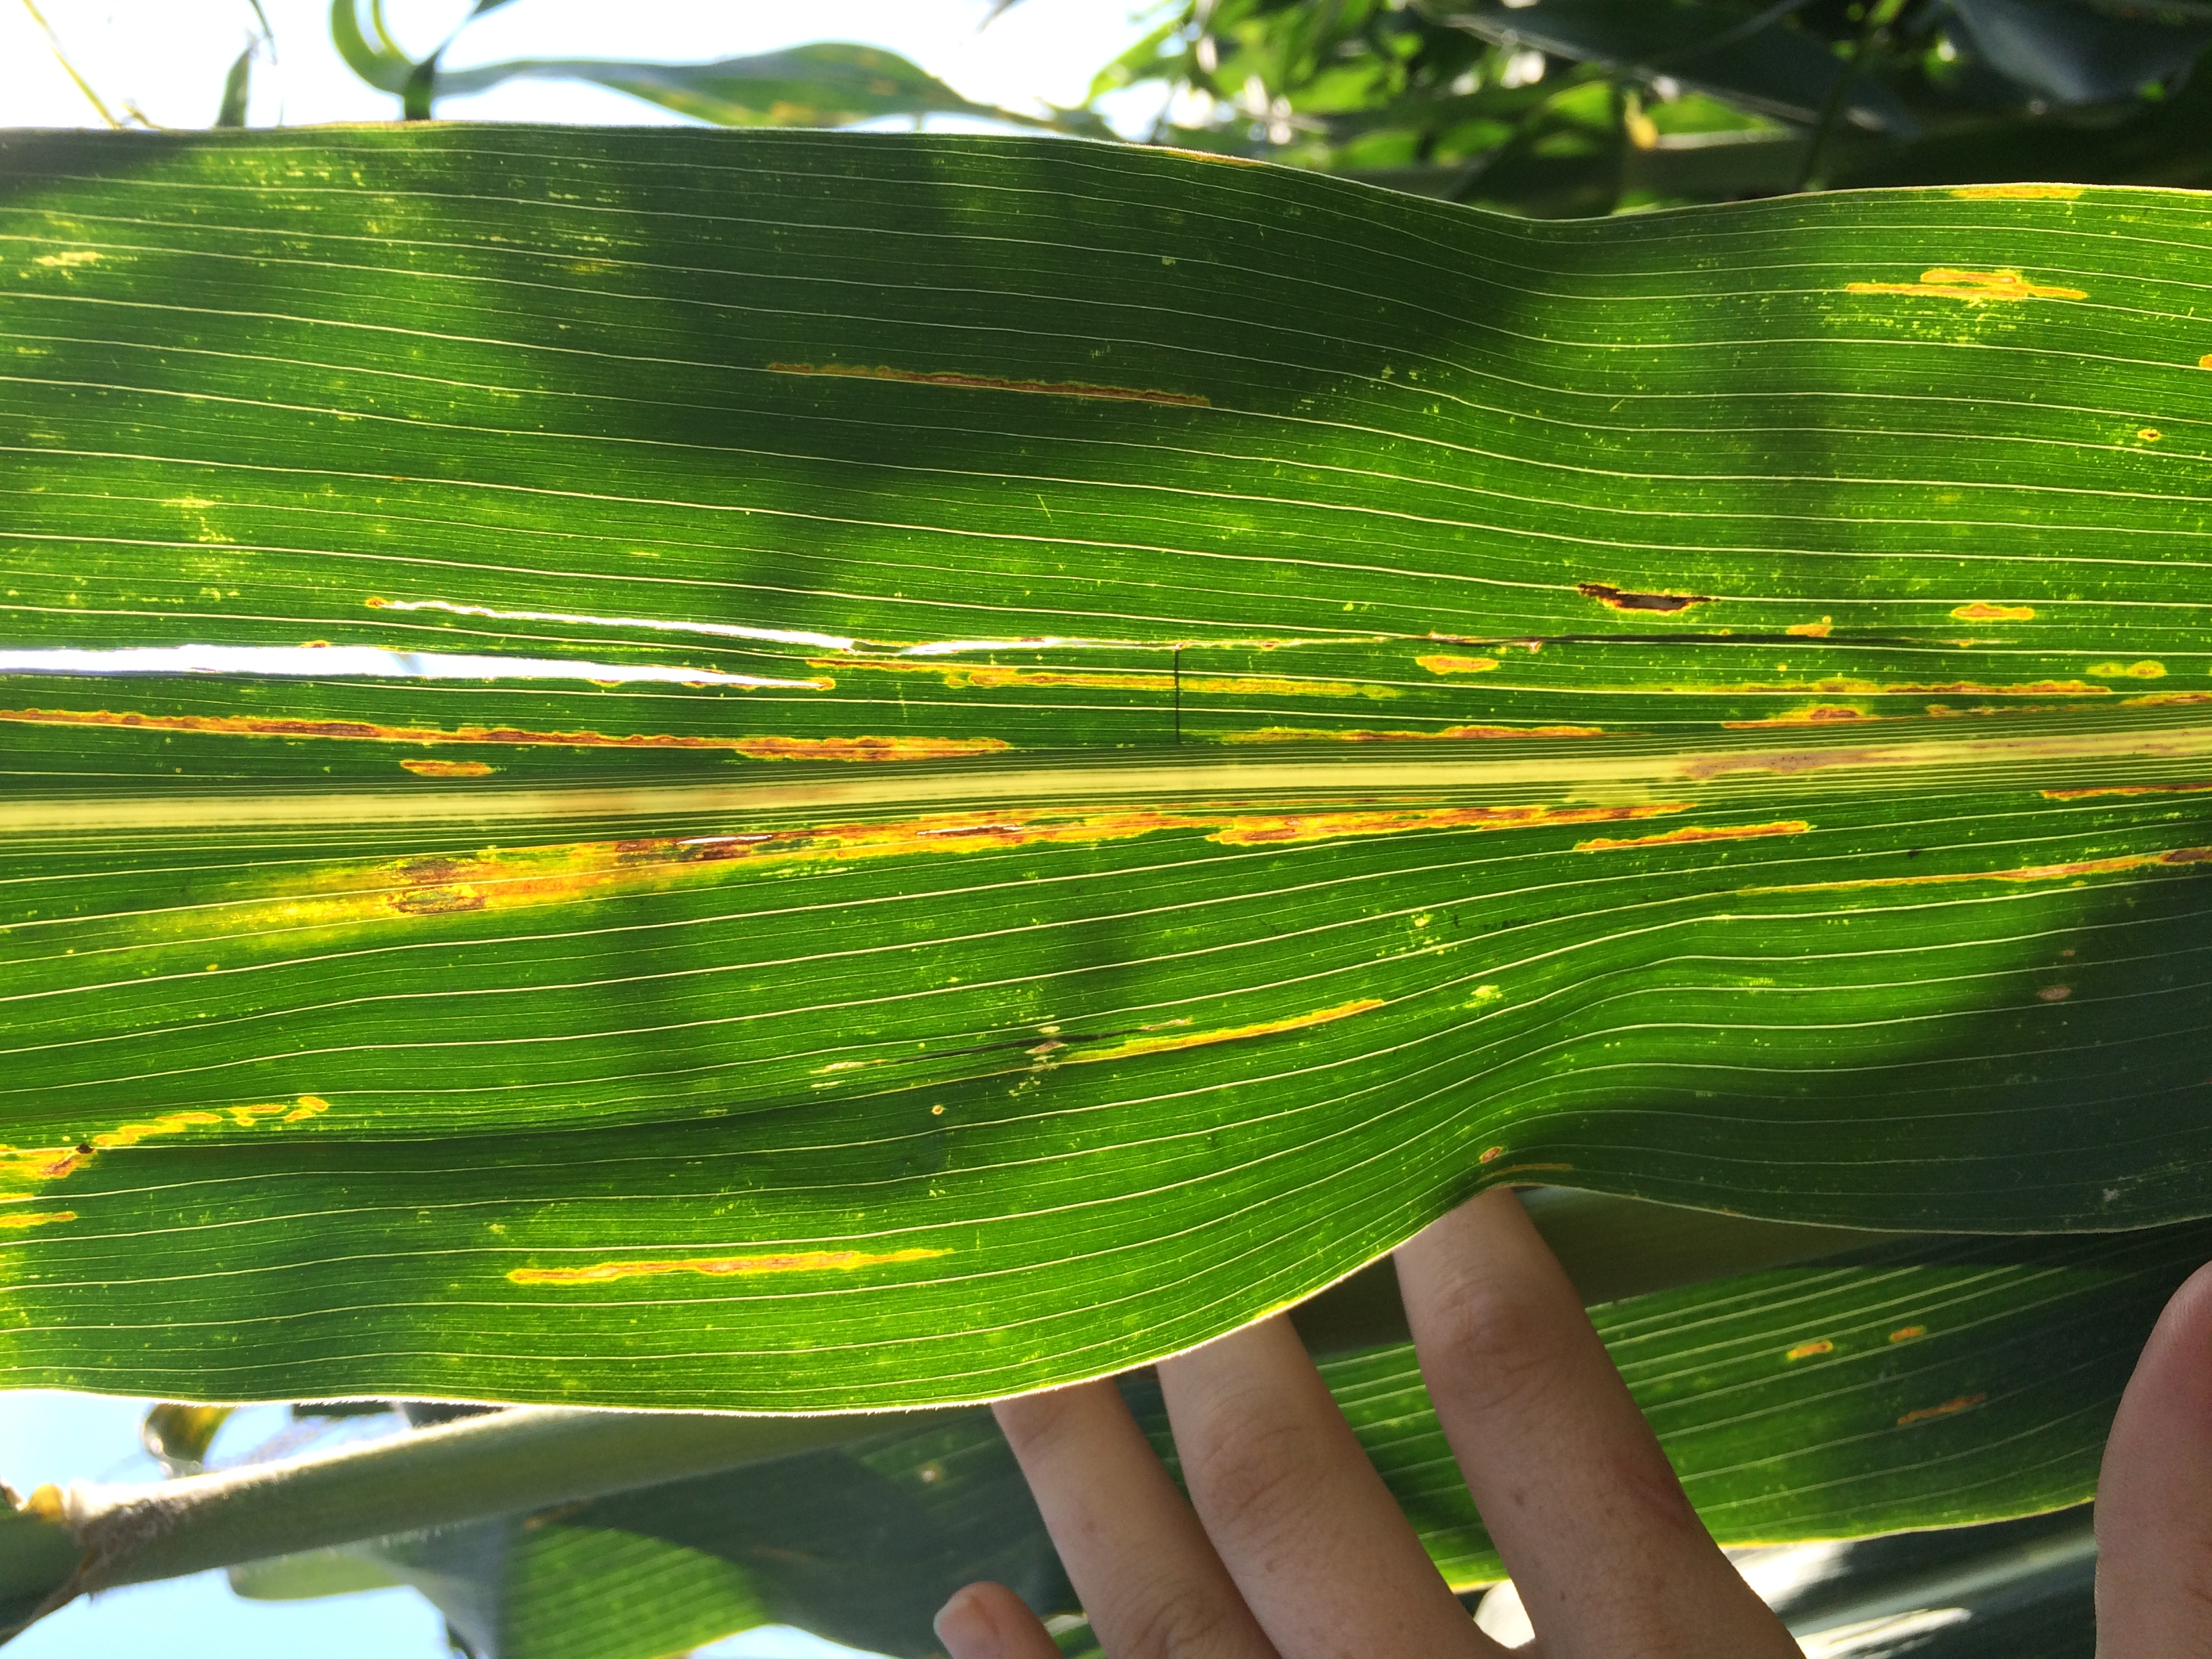 New bacterial leaf disease “Bacterial leaf streak” identified in one ...